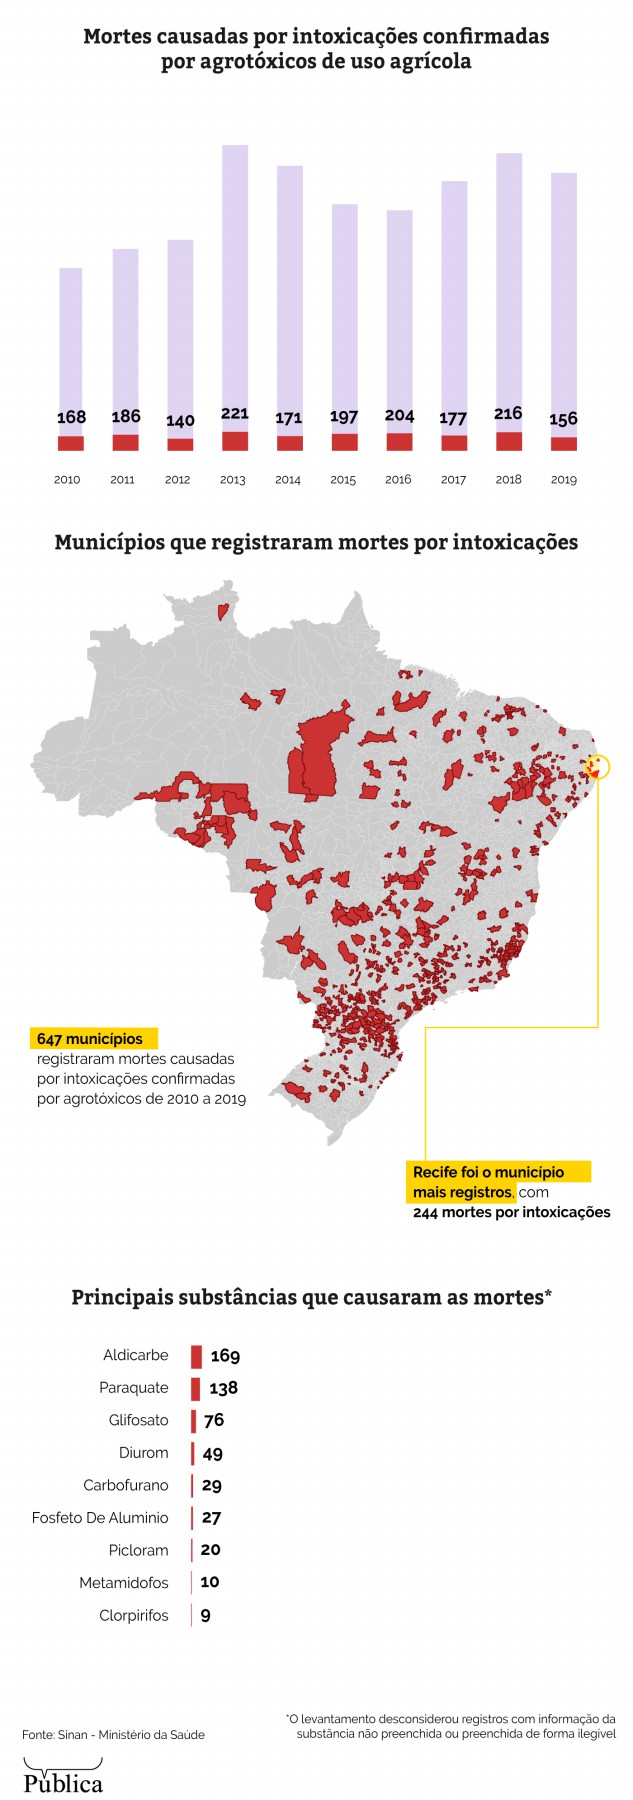 Sufocado por agrotóxicos perigosos, Brasil tem de